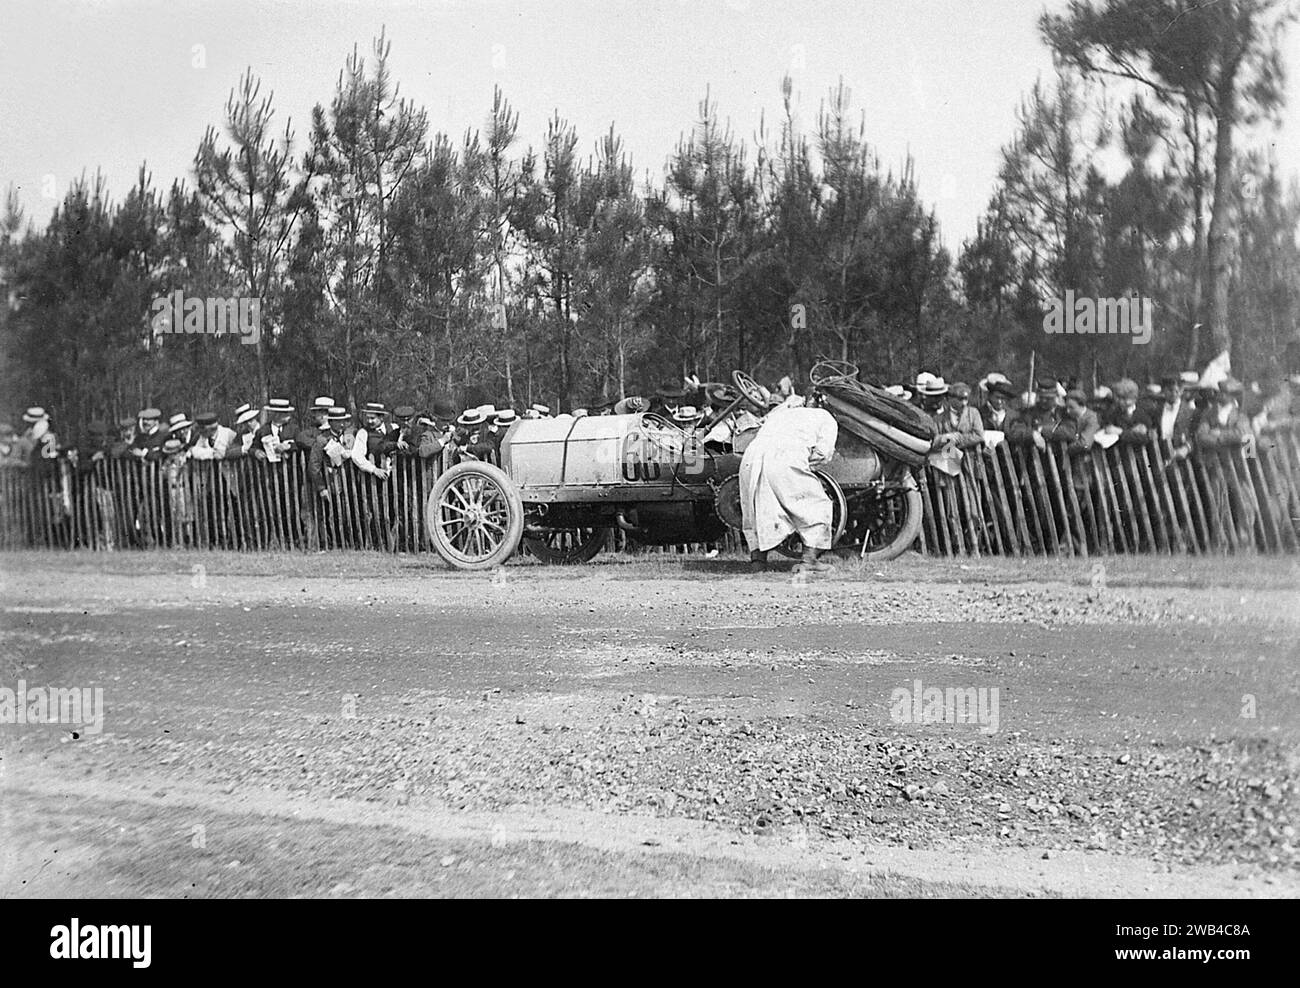 Prima edizione della 24 ore di le Mans endurance sport car race (24 heures du Mans). 26 e 27 giugno 1906. La Mercedes II guidata da Mariaux aveva uno pneumatico sgonfio. Foto di Jean de Biré Foto Stock